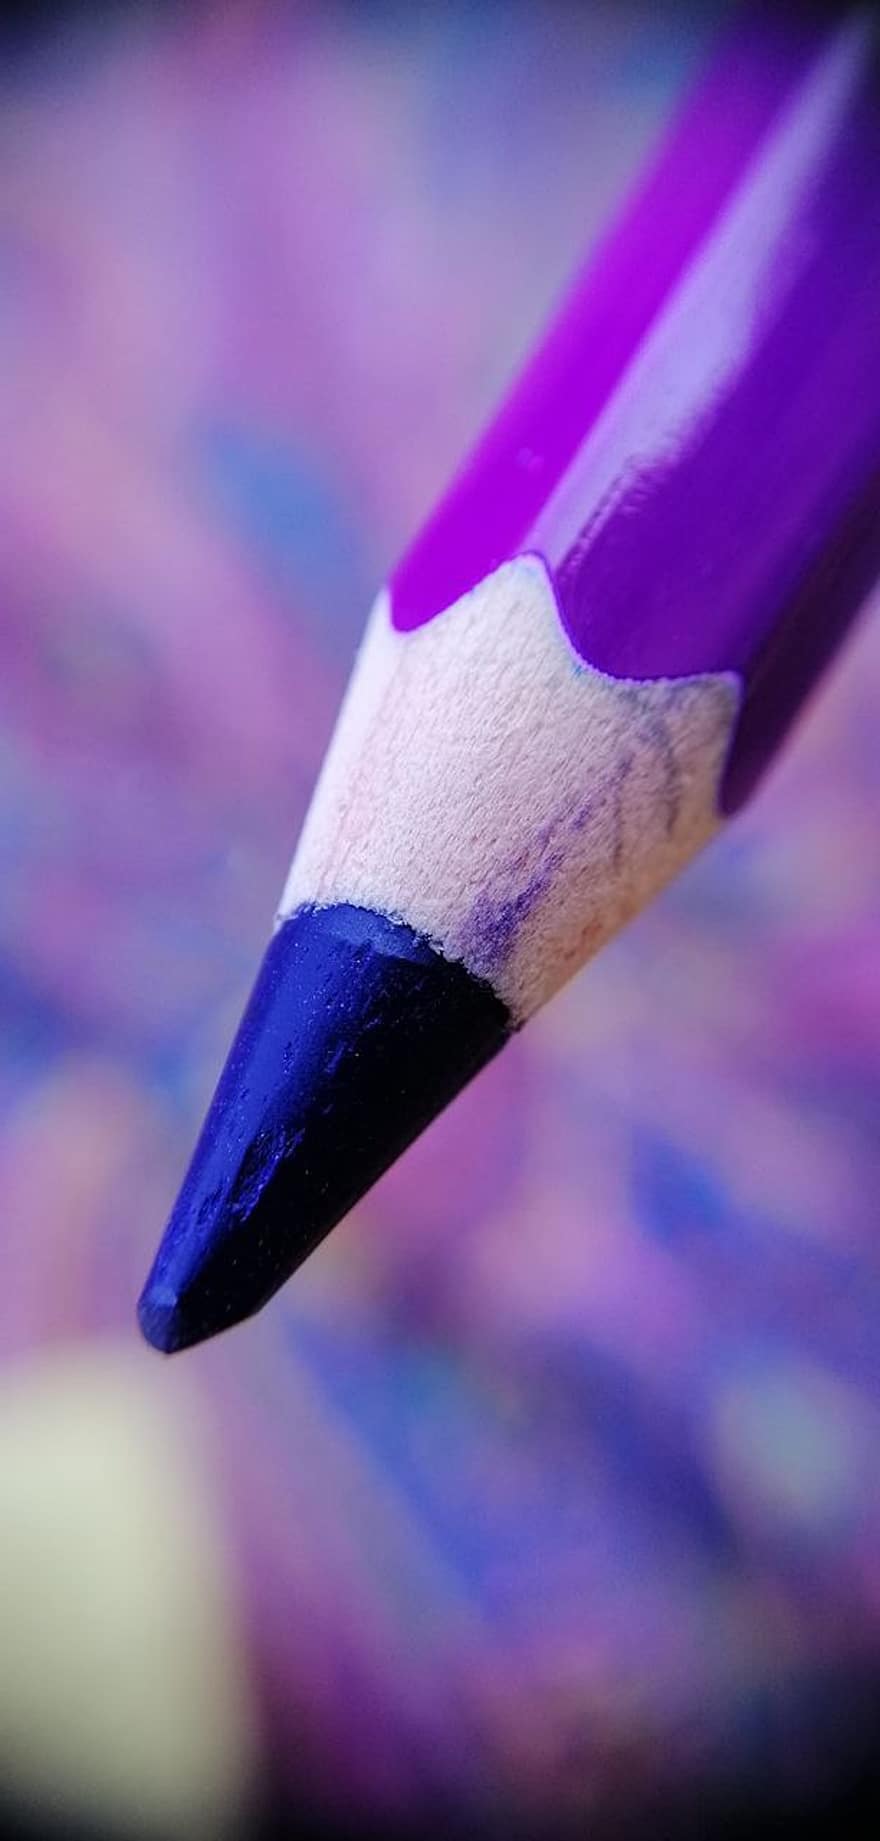 Renkli kalem, Menekşe Kalem, Menekşe Renkli Kalem, menekşe, Sanat ve El işi, Sanat malzemeleri, renklendirici malzeme, boyama, makro fotoğrafçılık, bokeh